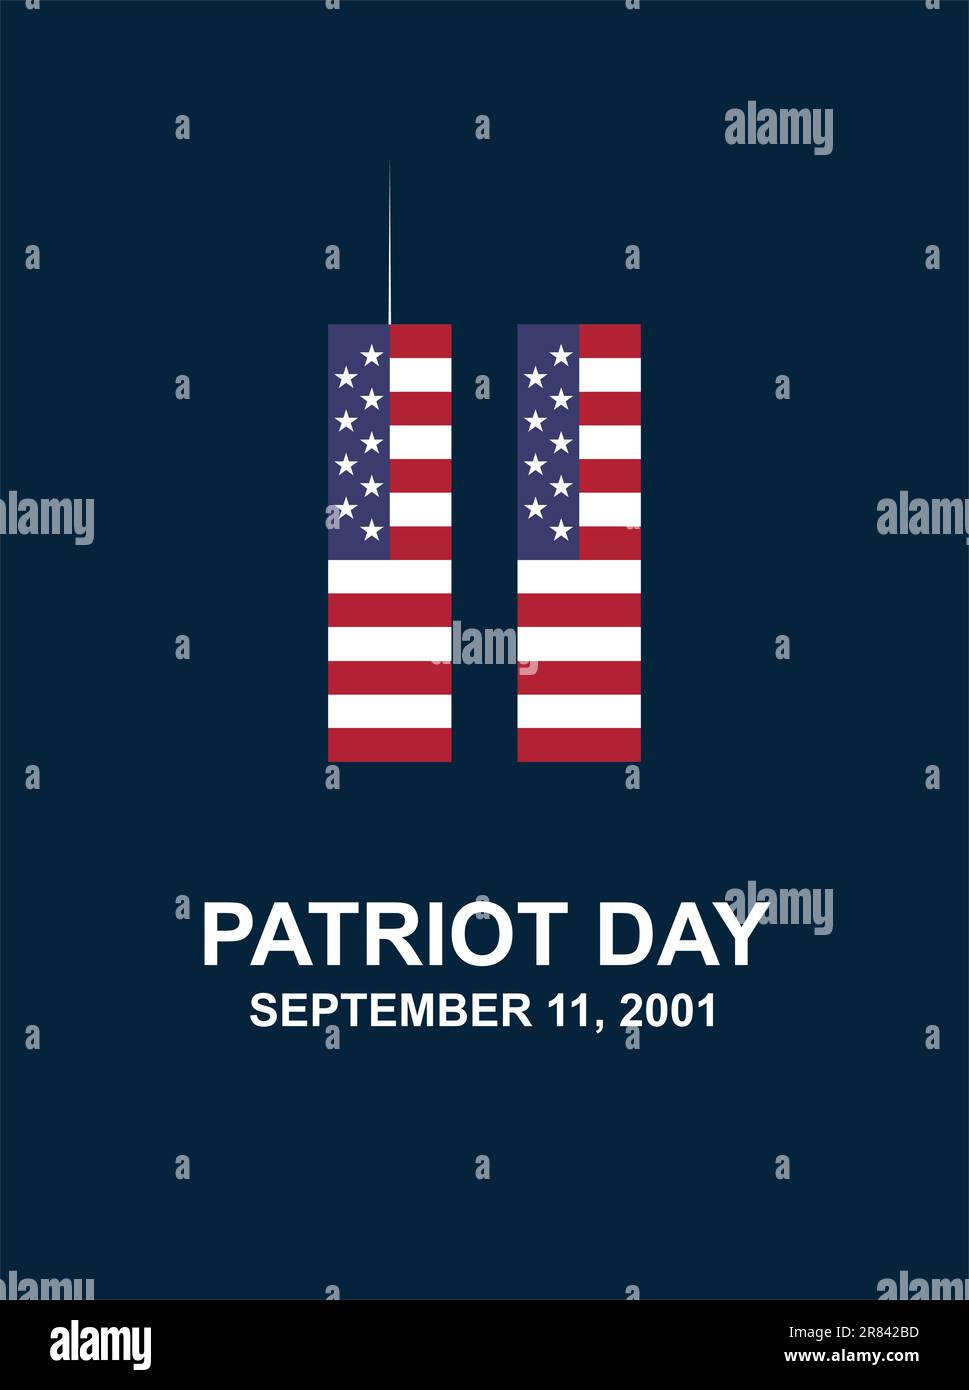 Patriot Day 11. September 2001. Vector 9,11 USA-Banner US-Flagge, 911-Gedenkstätte mit zwei Türmen und wir werden die Schriftzeichen auf blauem Hintergrund nie vergessen Stock Vektor